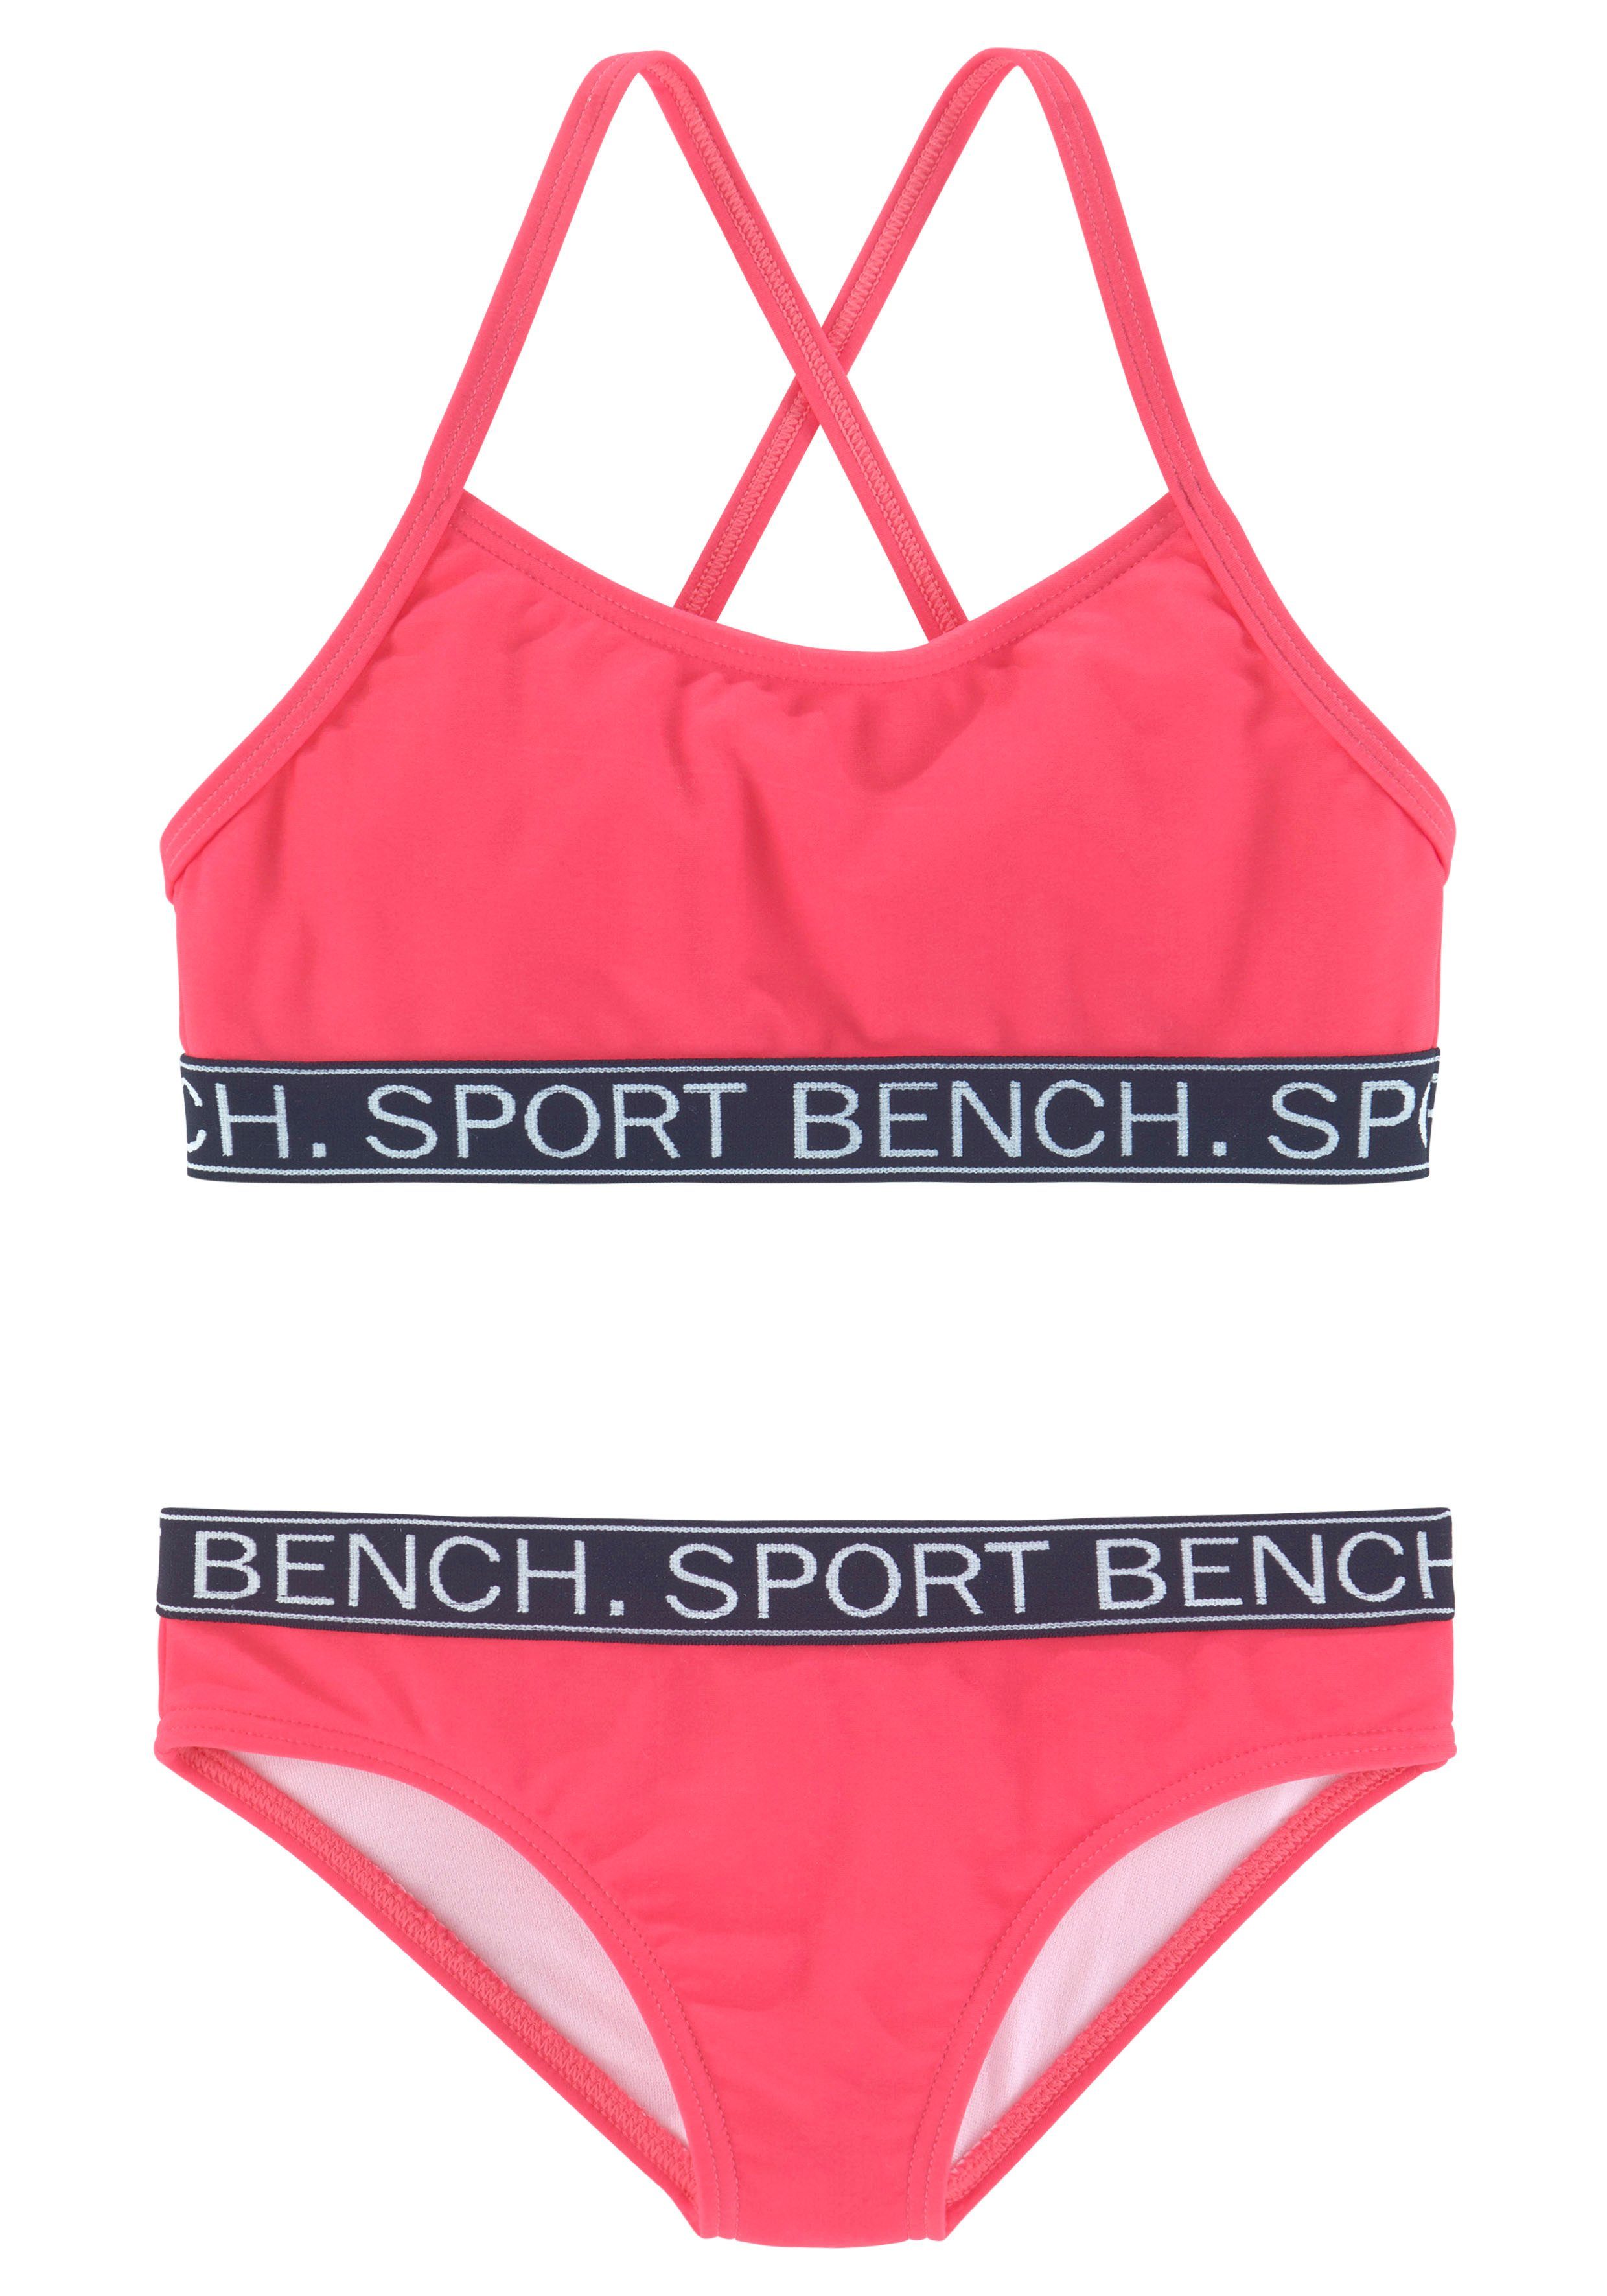 Bench. Bustier-Bikini Yva Kids in sportlichem Design und Farben pink | Bustier-Bikinis